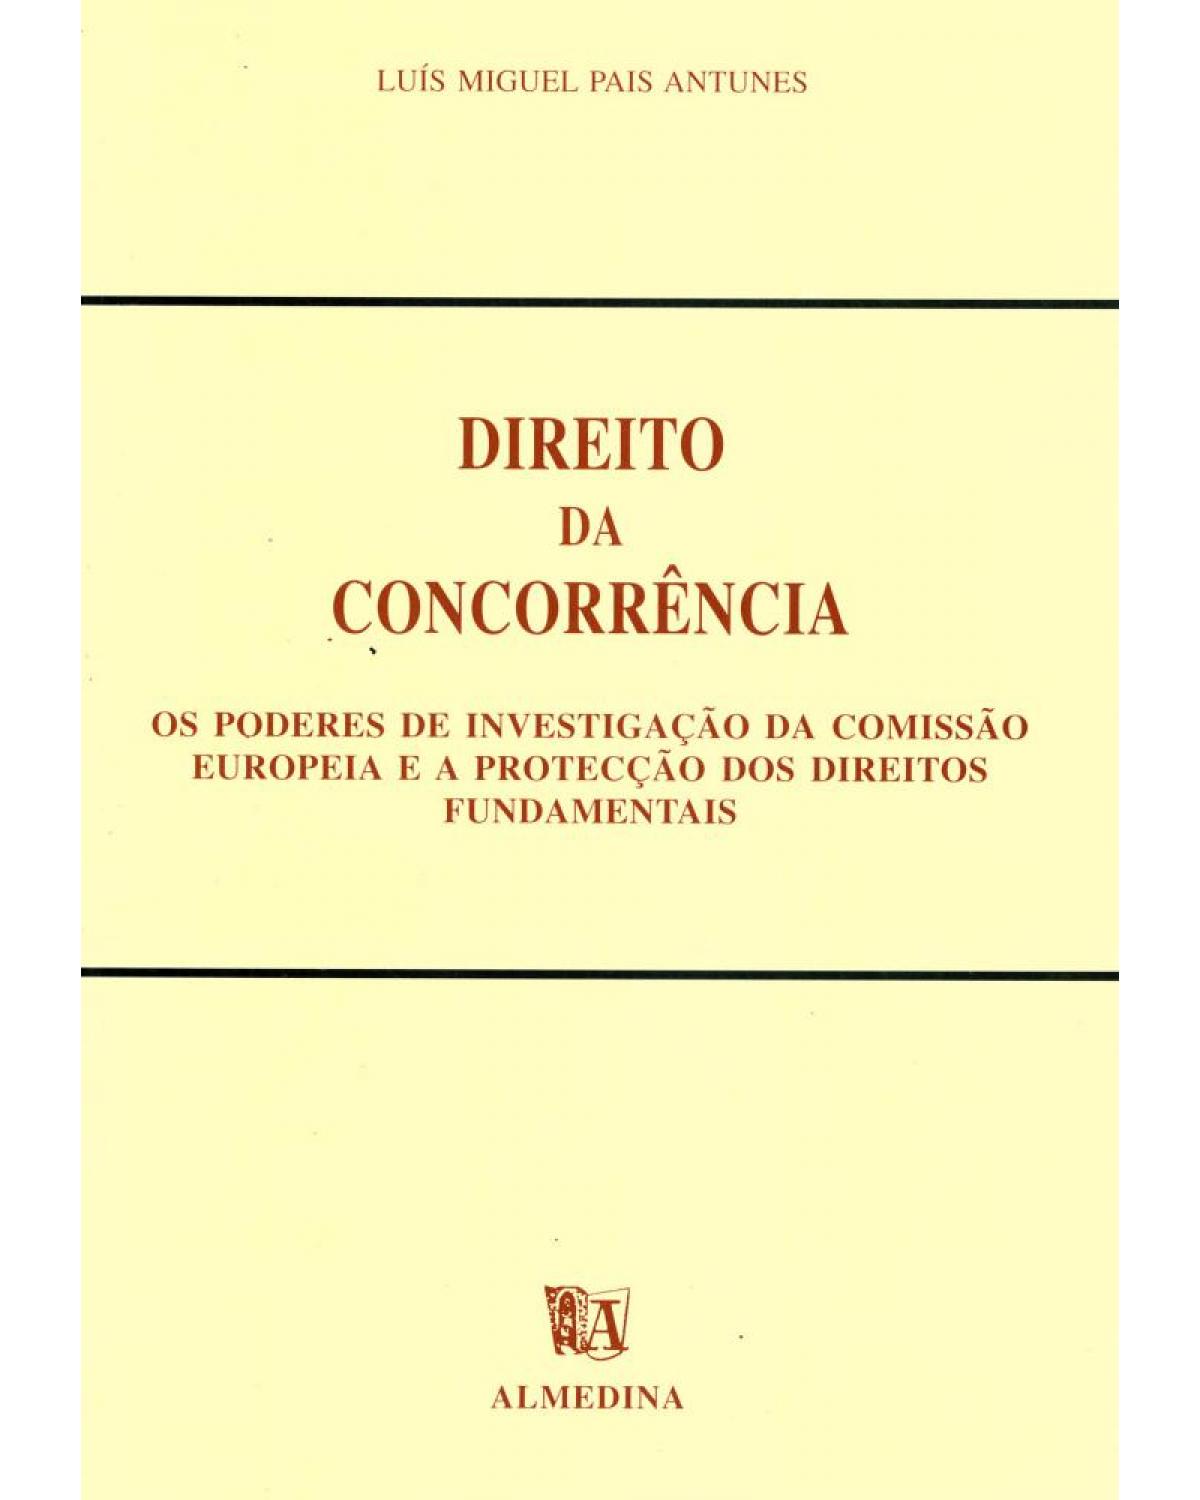 Direito da concorrência - os poderes de investigação da comissão europeia e a protecção dos direitos fundamentais - 1ª Edição | 1995